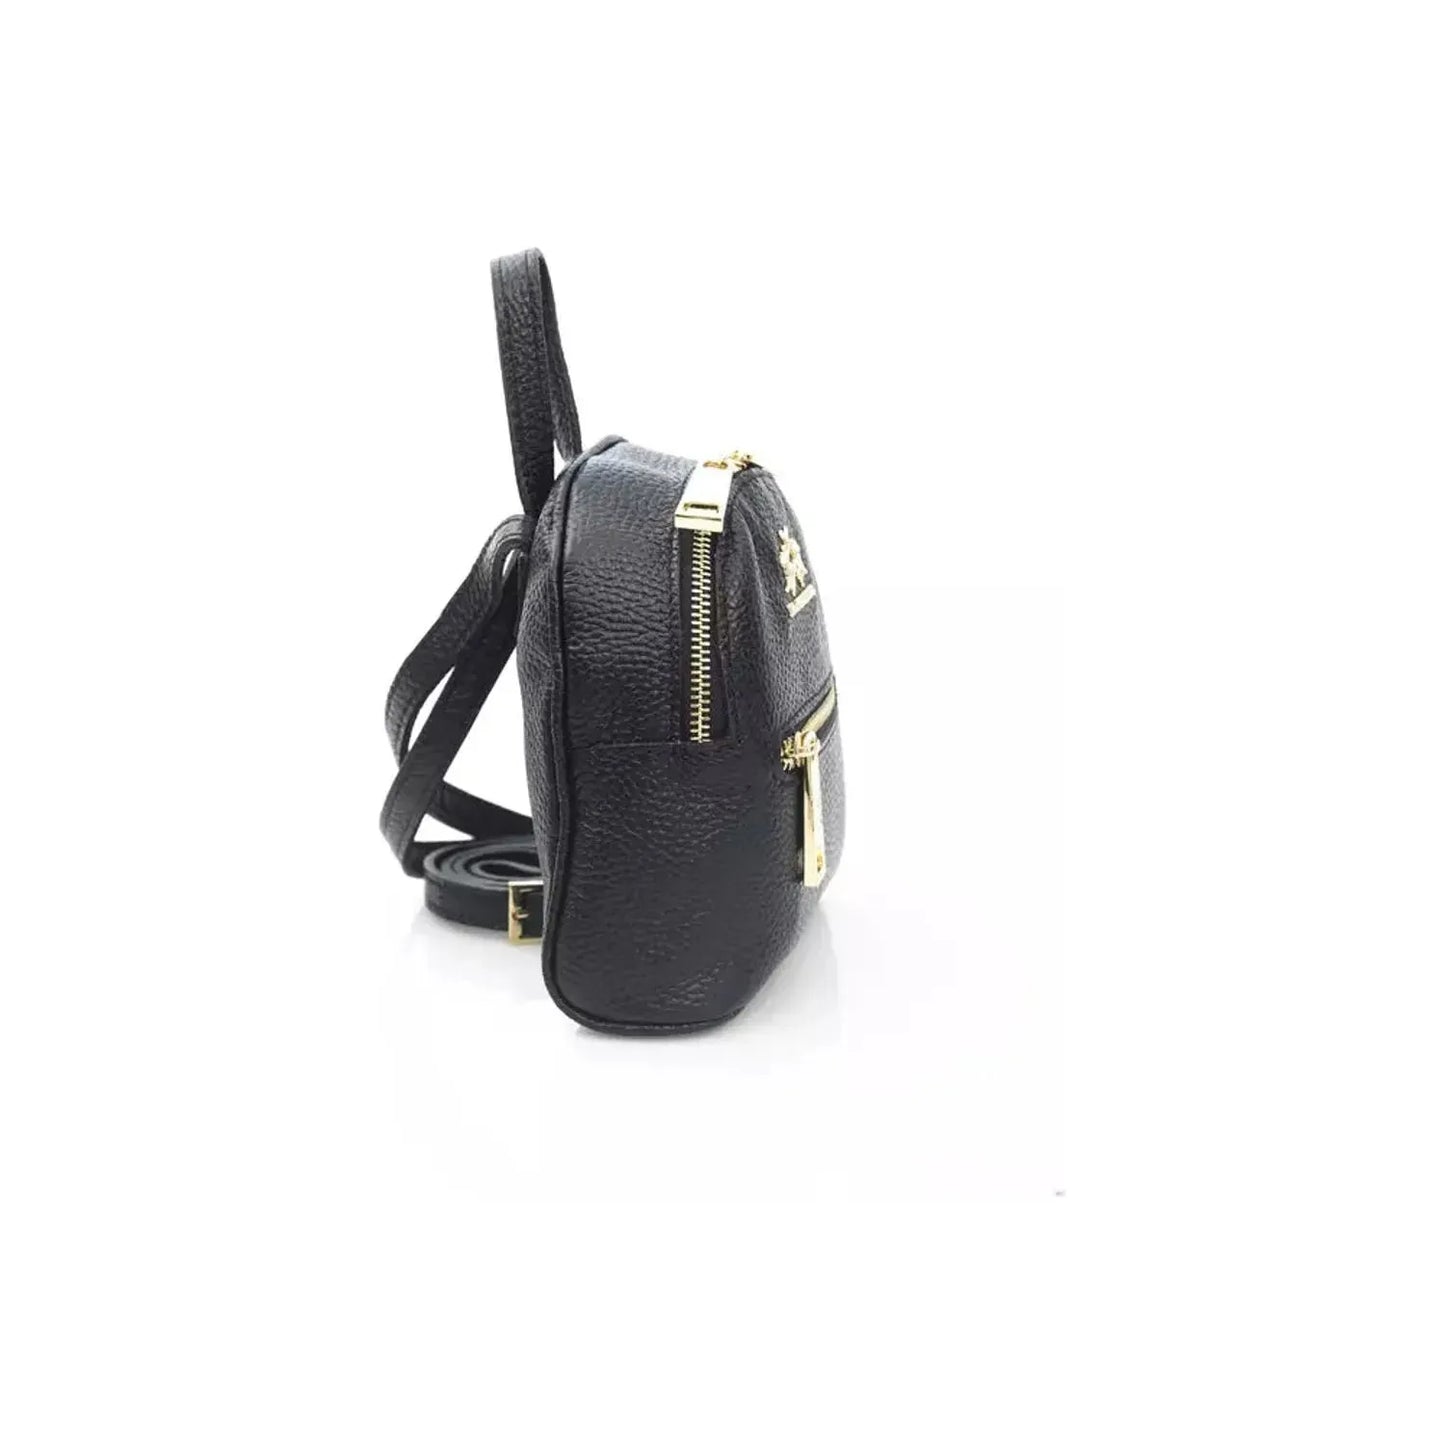 La Martina Elegant Leather Messenger Bag with Logo Detailing black-messenger-bag product-22973-383513214-22-3d9c2b3a-b2e.webp